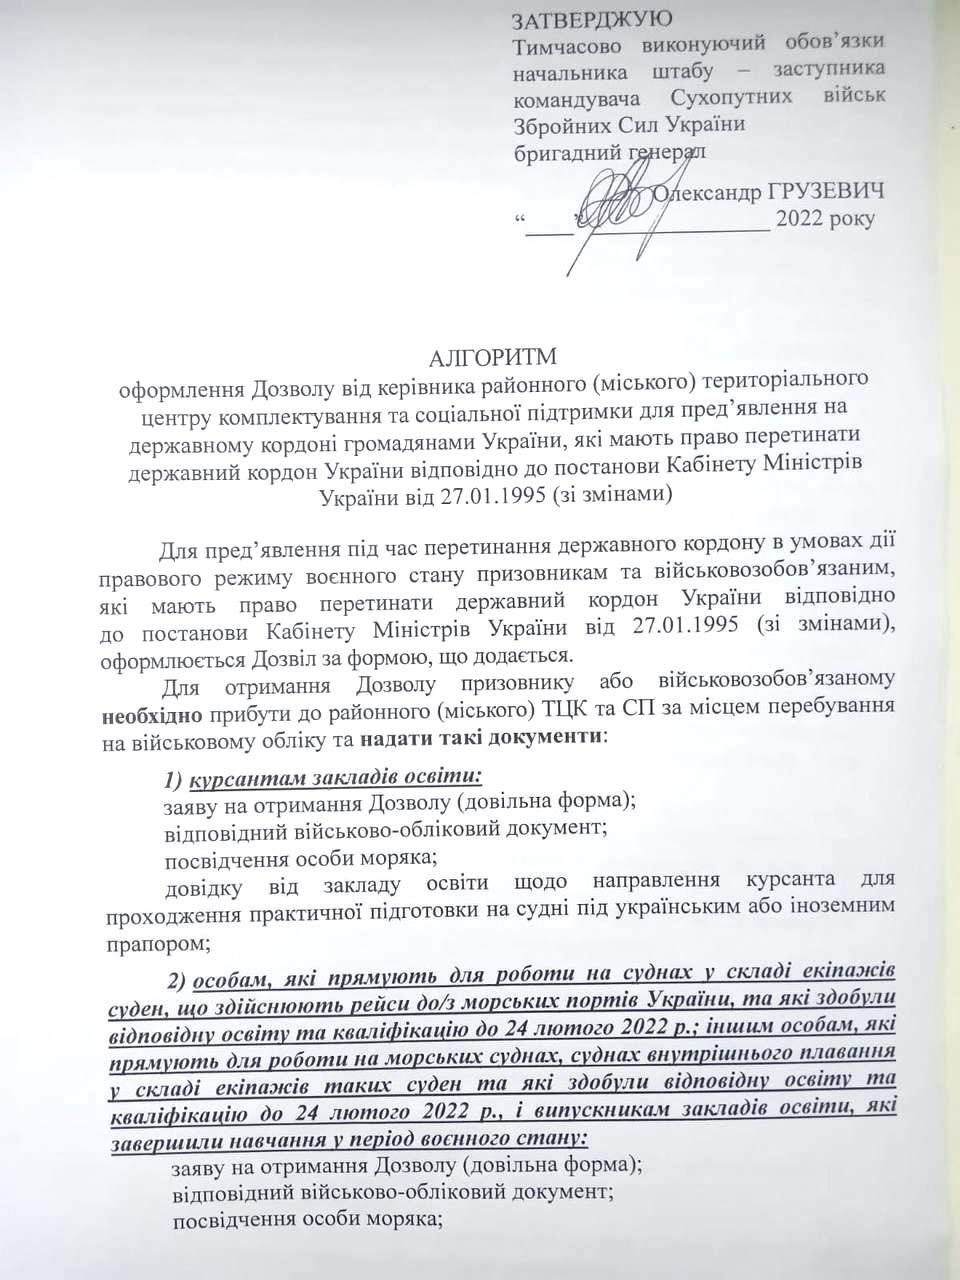 Моряки Бессарабии по-прежнему не могут воспользоваться своим правом уйти в рейс: россияне "меняют" украинцев на судах, а из страны выпускают лишь "избранных"